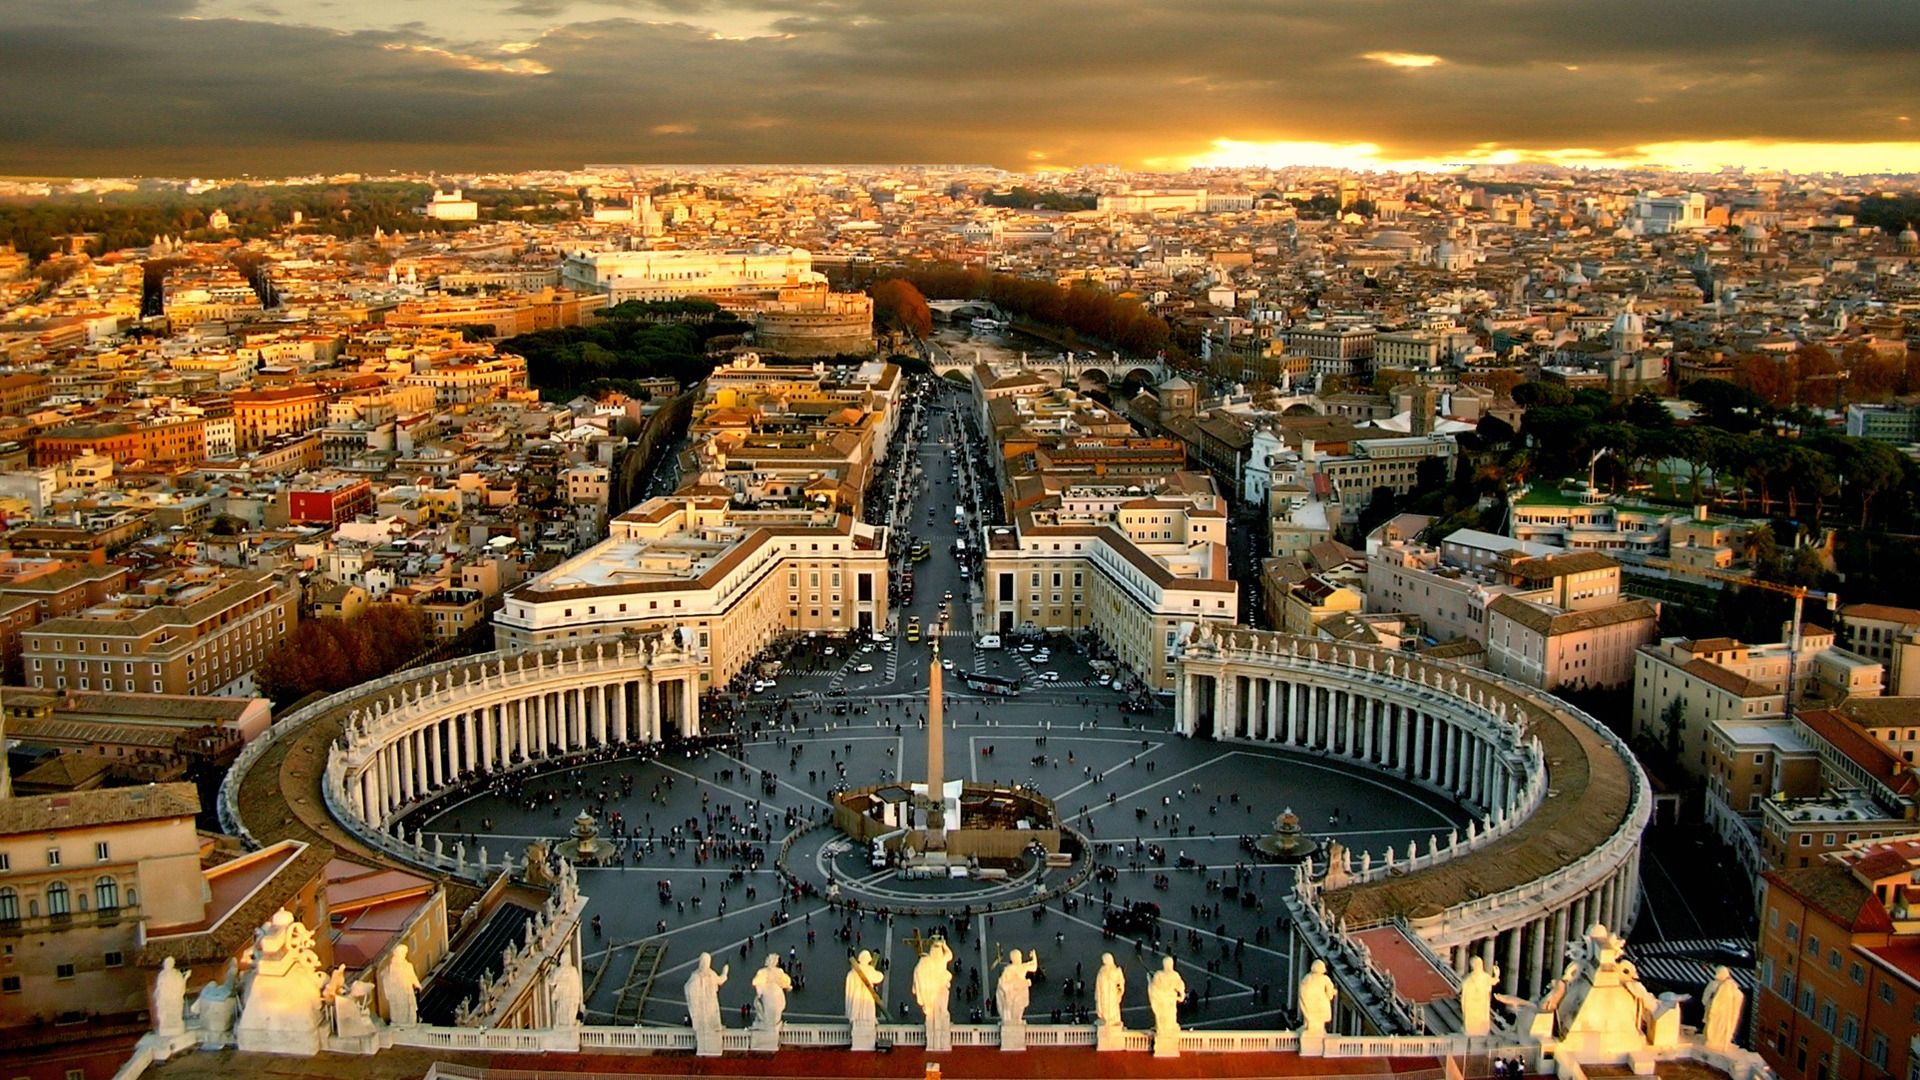 Vatican City HD Wallpaper Id Wallpapervortex